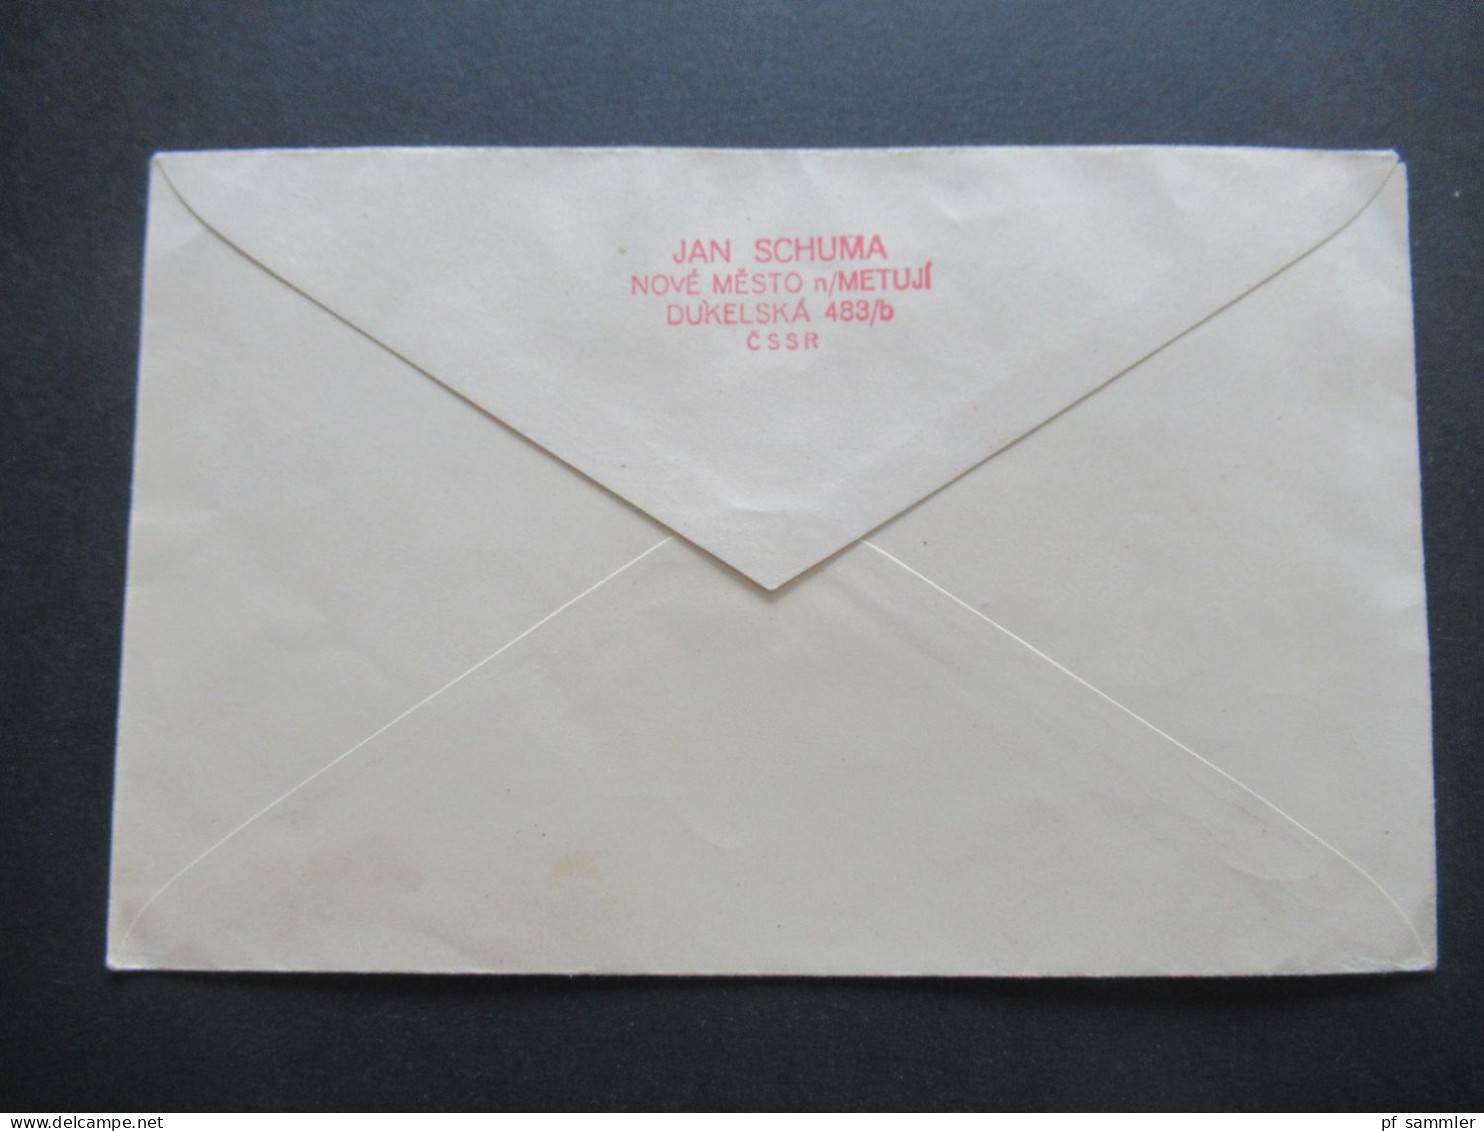 CSSR 1930 Blanko Umschlag Mi.Nr.299 / 302 Mit Unterrand / Schriftband Und Rotem Stempel Brno 1 1850 - 1930 Massaryk - Briefe U. Dokumente